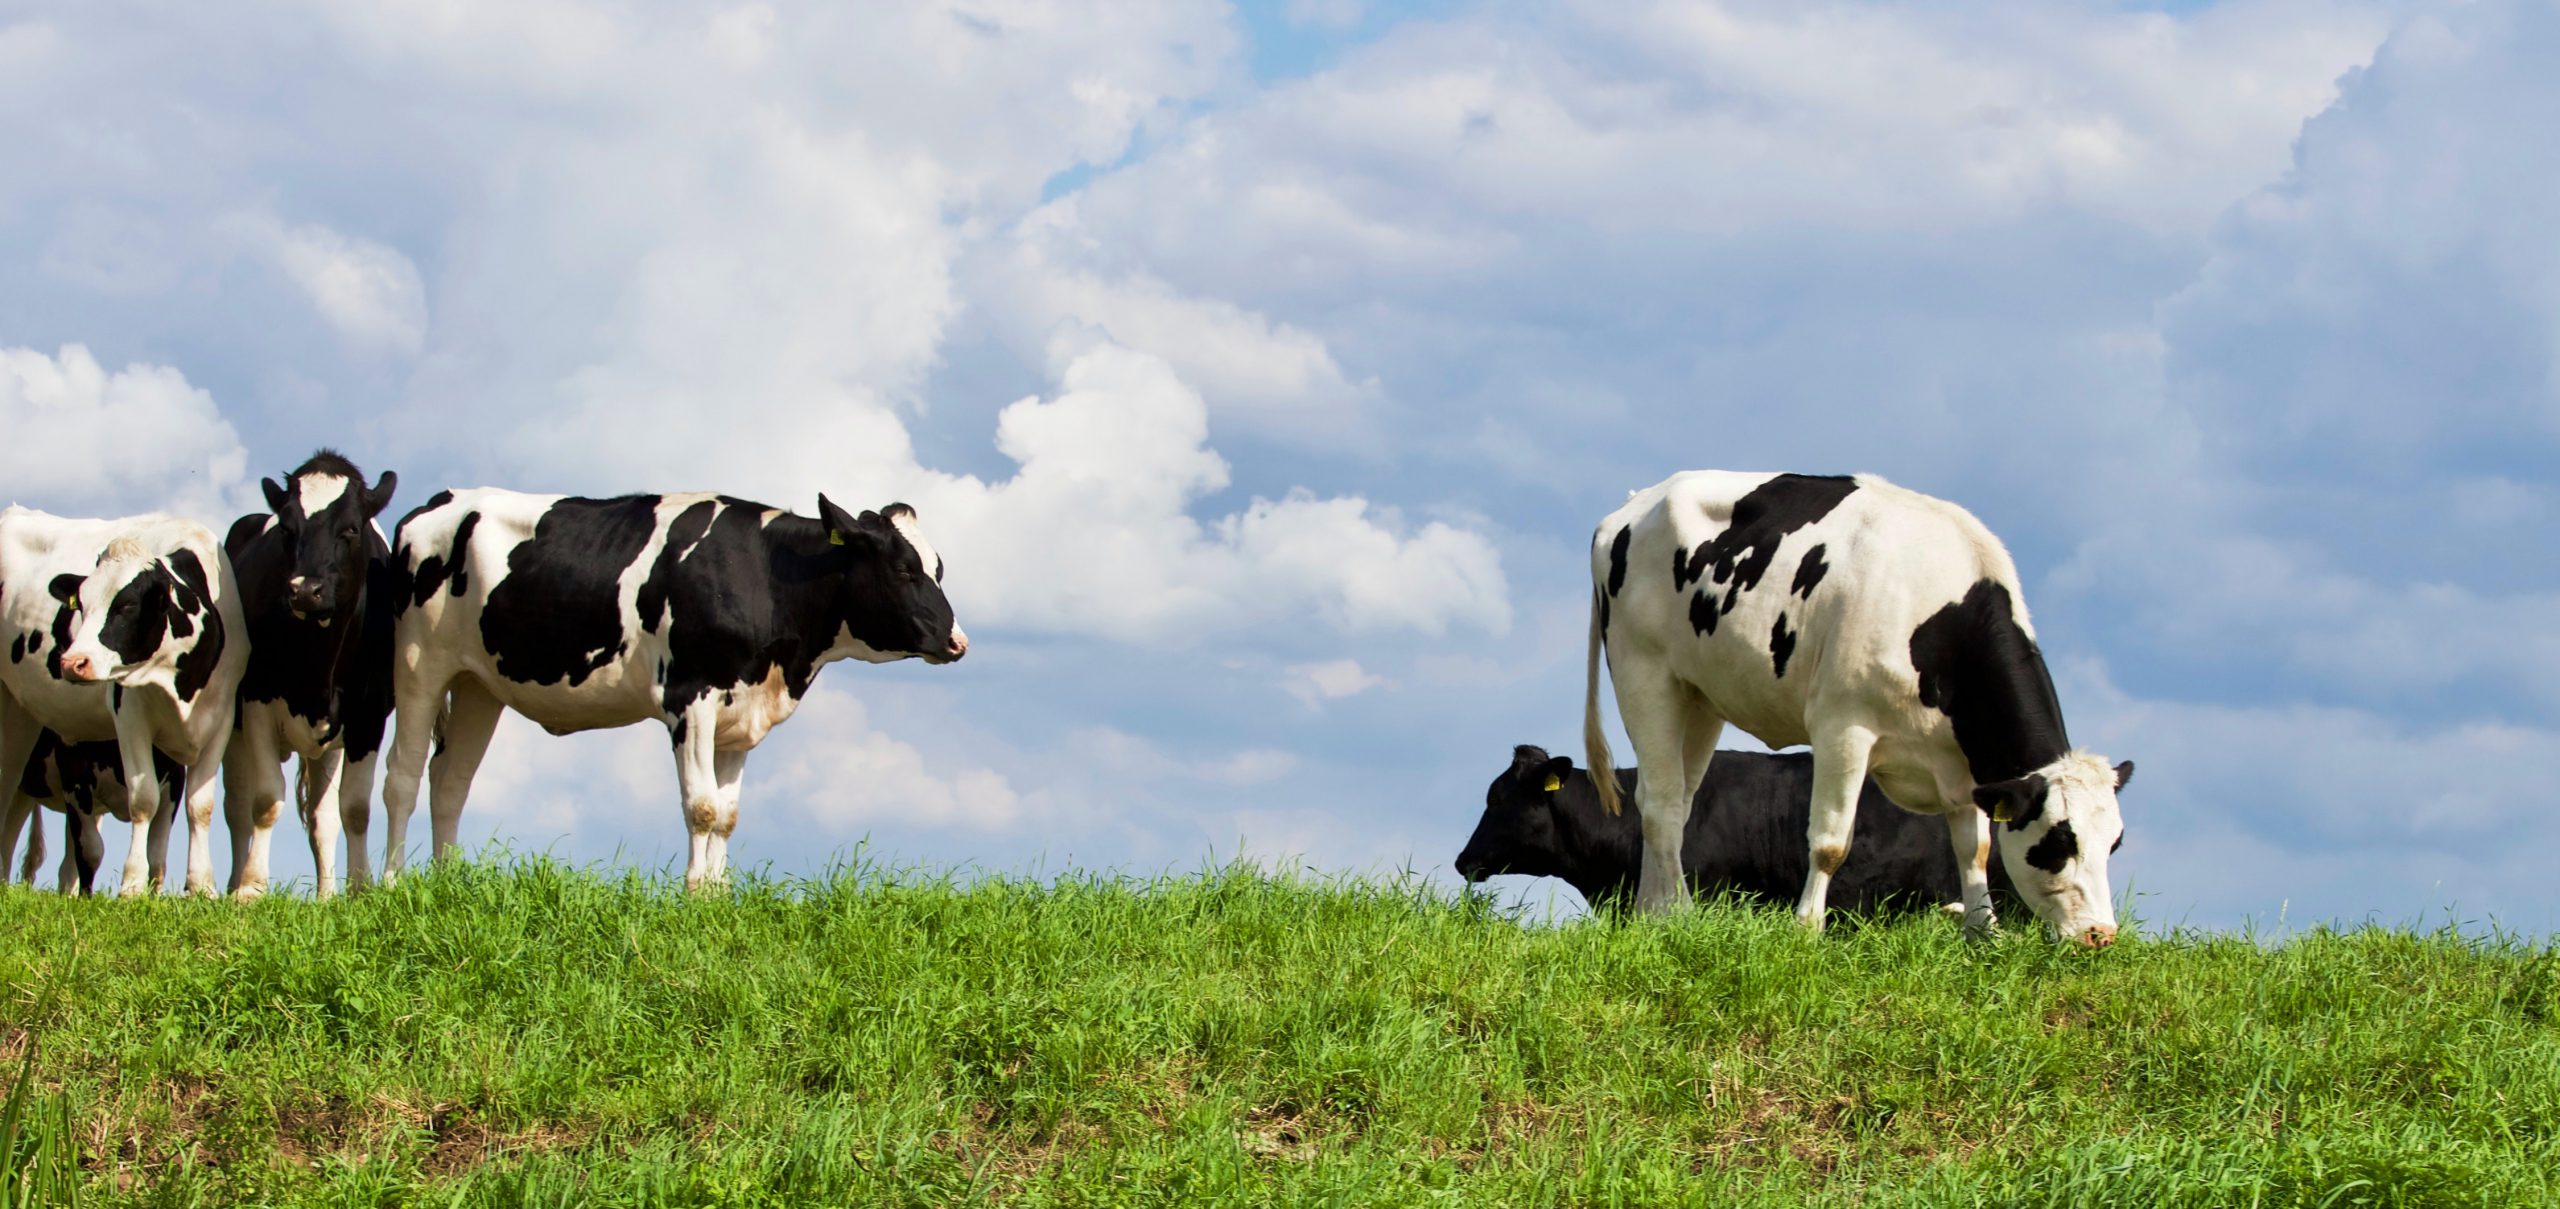 Lokale veehouderij niet de grootste bron van fijnstof op leefniveau